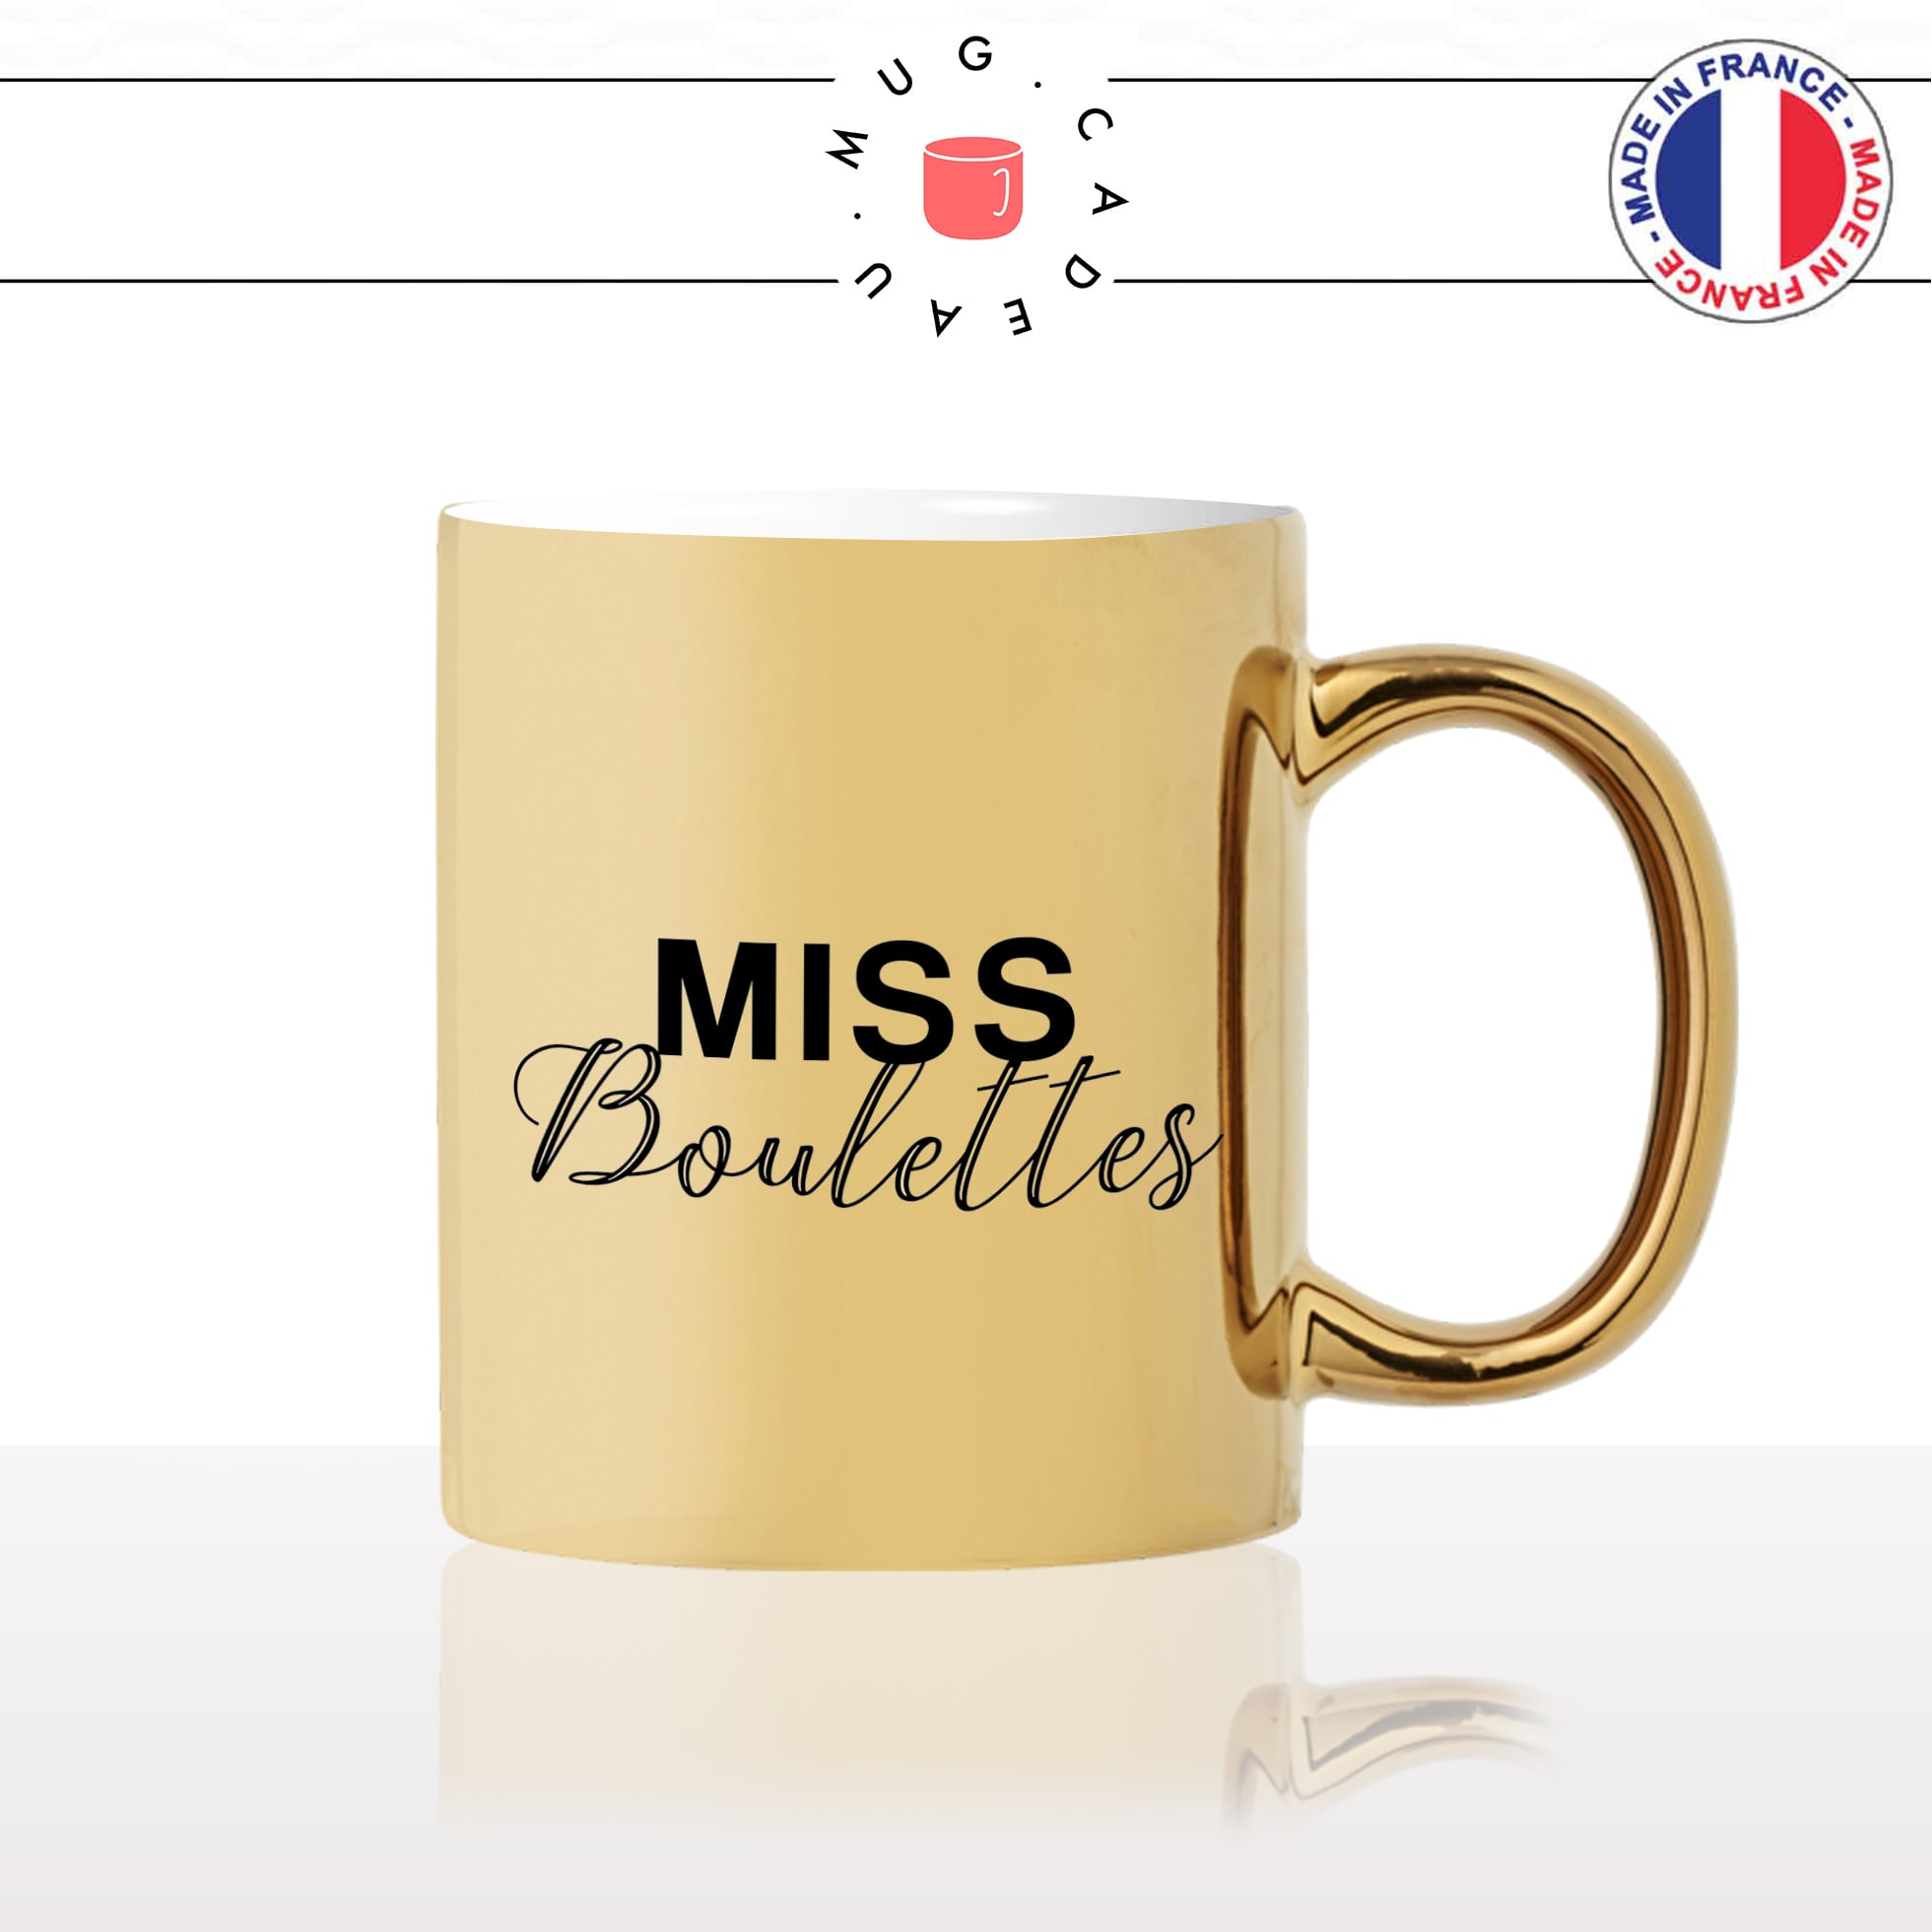 mug-tasse-doré-or-gold-miss-boulettes-oups-femme-homme-couple-copine-cool-humour-fun-idée-cadeau-personnalisé-café-thé2-min